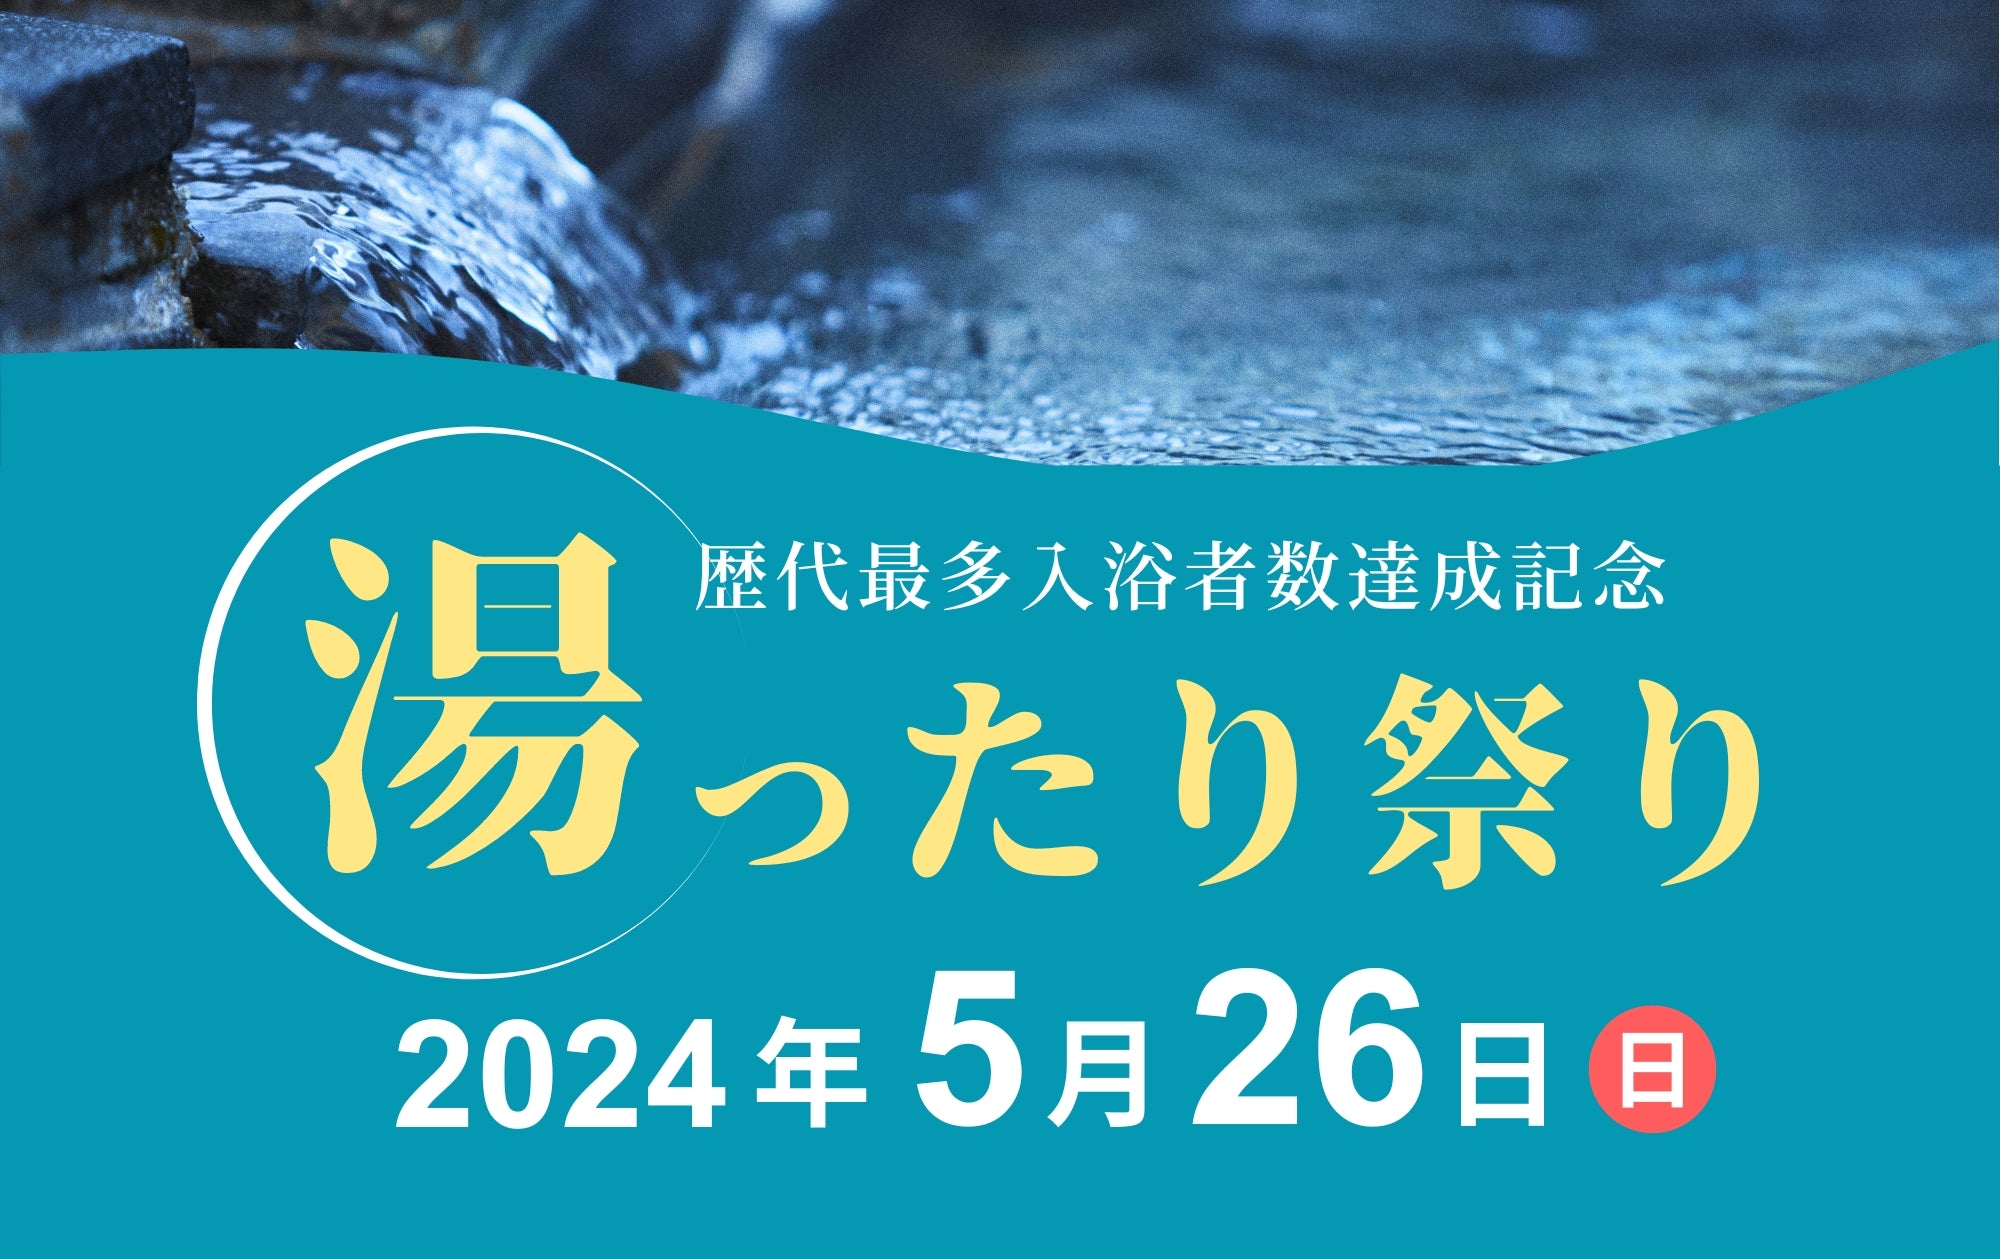 歴代最多入浴者数達成記念「湯ったり祭り」開催！